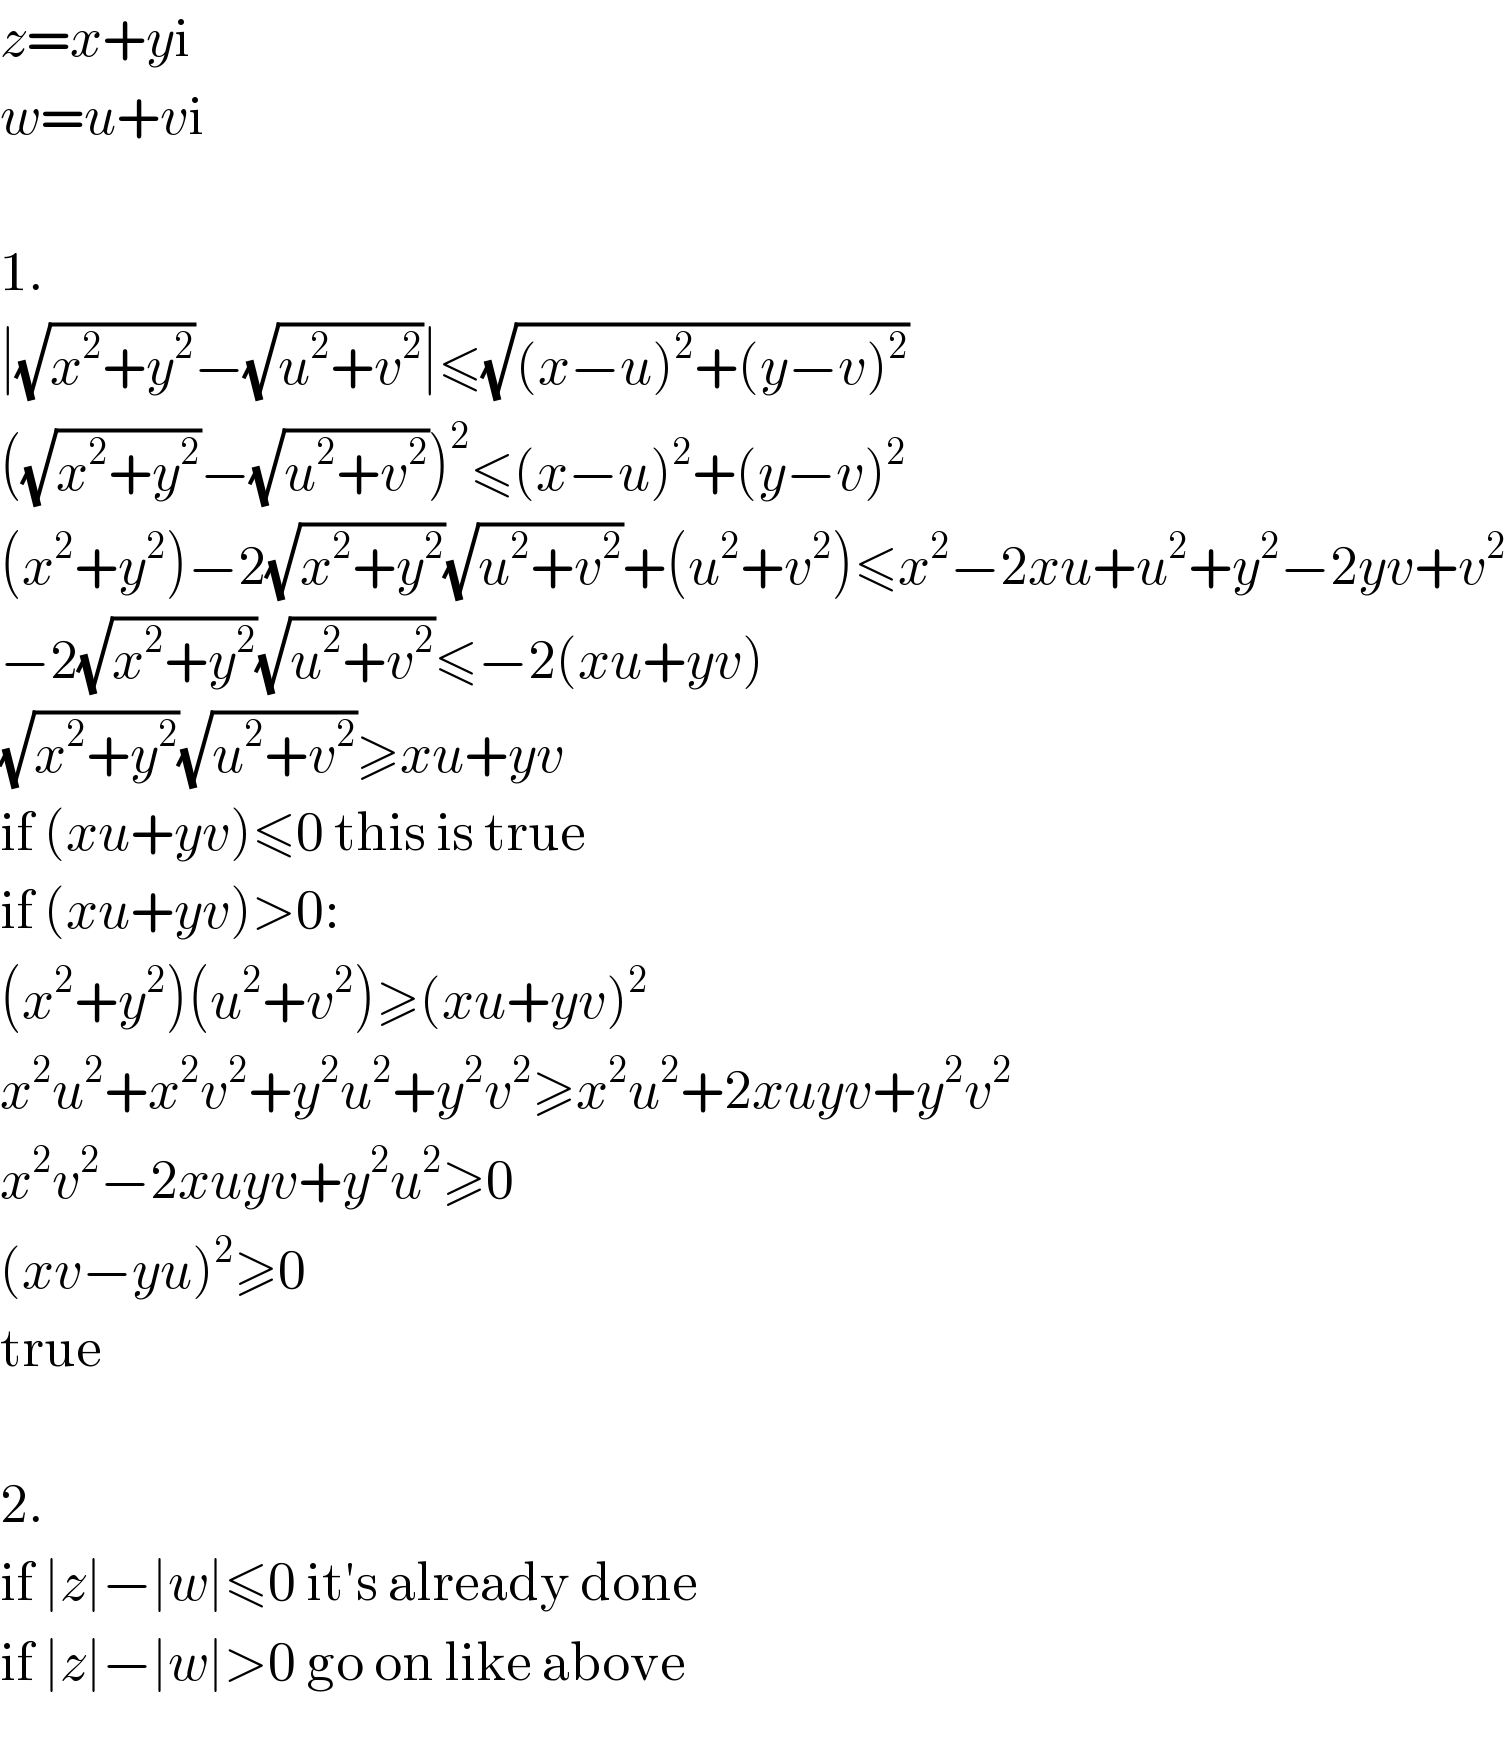 z=x+yi  w=u+vi    1.  ∣(√(x^2 +y^2 ))−(√(u^2 +v^2 ))∣≤(√((x−u)^2 +(y−v)^2 ))  ((√(x^2 +y^2 ))−(√(u^2 +v^2 )))^2 ≤(x−u)^2 +(y−v)^2   (x^2 +y^2 )−2(√(x^2 +y^2 ))(√(u^2 +v^2 ))+(u^2 +v^2 )≤x^2 −2xu+u^2 +y^2 −2yv+v^2   −2(√(x^2 +y^2 ))(√(u^2 +v^2 ))≤−2(xu+yv)  (√(x^2 +y^2 ))(√(u^2 +v^2 ))≥xu+yv  if (xu+yv)≤0 this is true  if (xu+yv)>0:  (x^2 +y^2 )(u^2 +v^2 )≥(xu+yv)^2   x^2 u^2 +x^2 v^2 +y^2 u^2 +y^2 v^2 ≥x^2 u^2 +2xuyv+y^2 v^2   x^2 v^2 −2xuyv+y^2 u^2 ≥0  (xv−yu)^2 ≥0  true    2.  if ∣z∣−∣w∣≤0 it′s already done  if ∣z∣−∣w∣>0 go on like above  